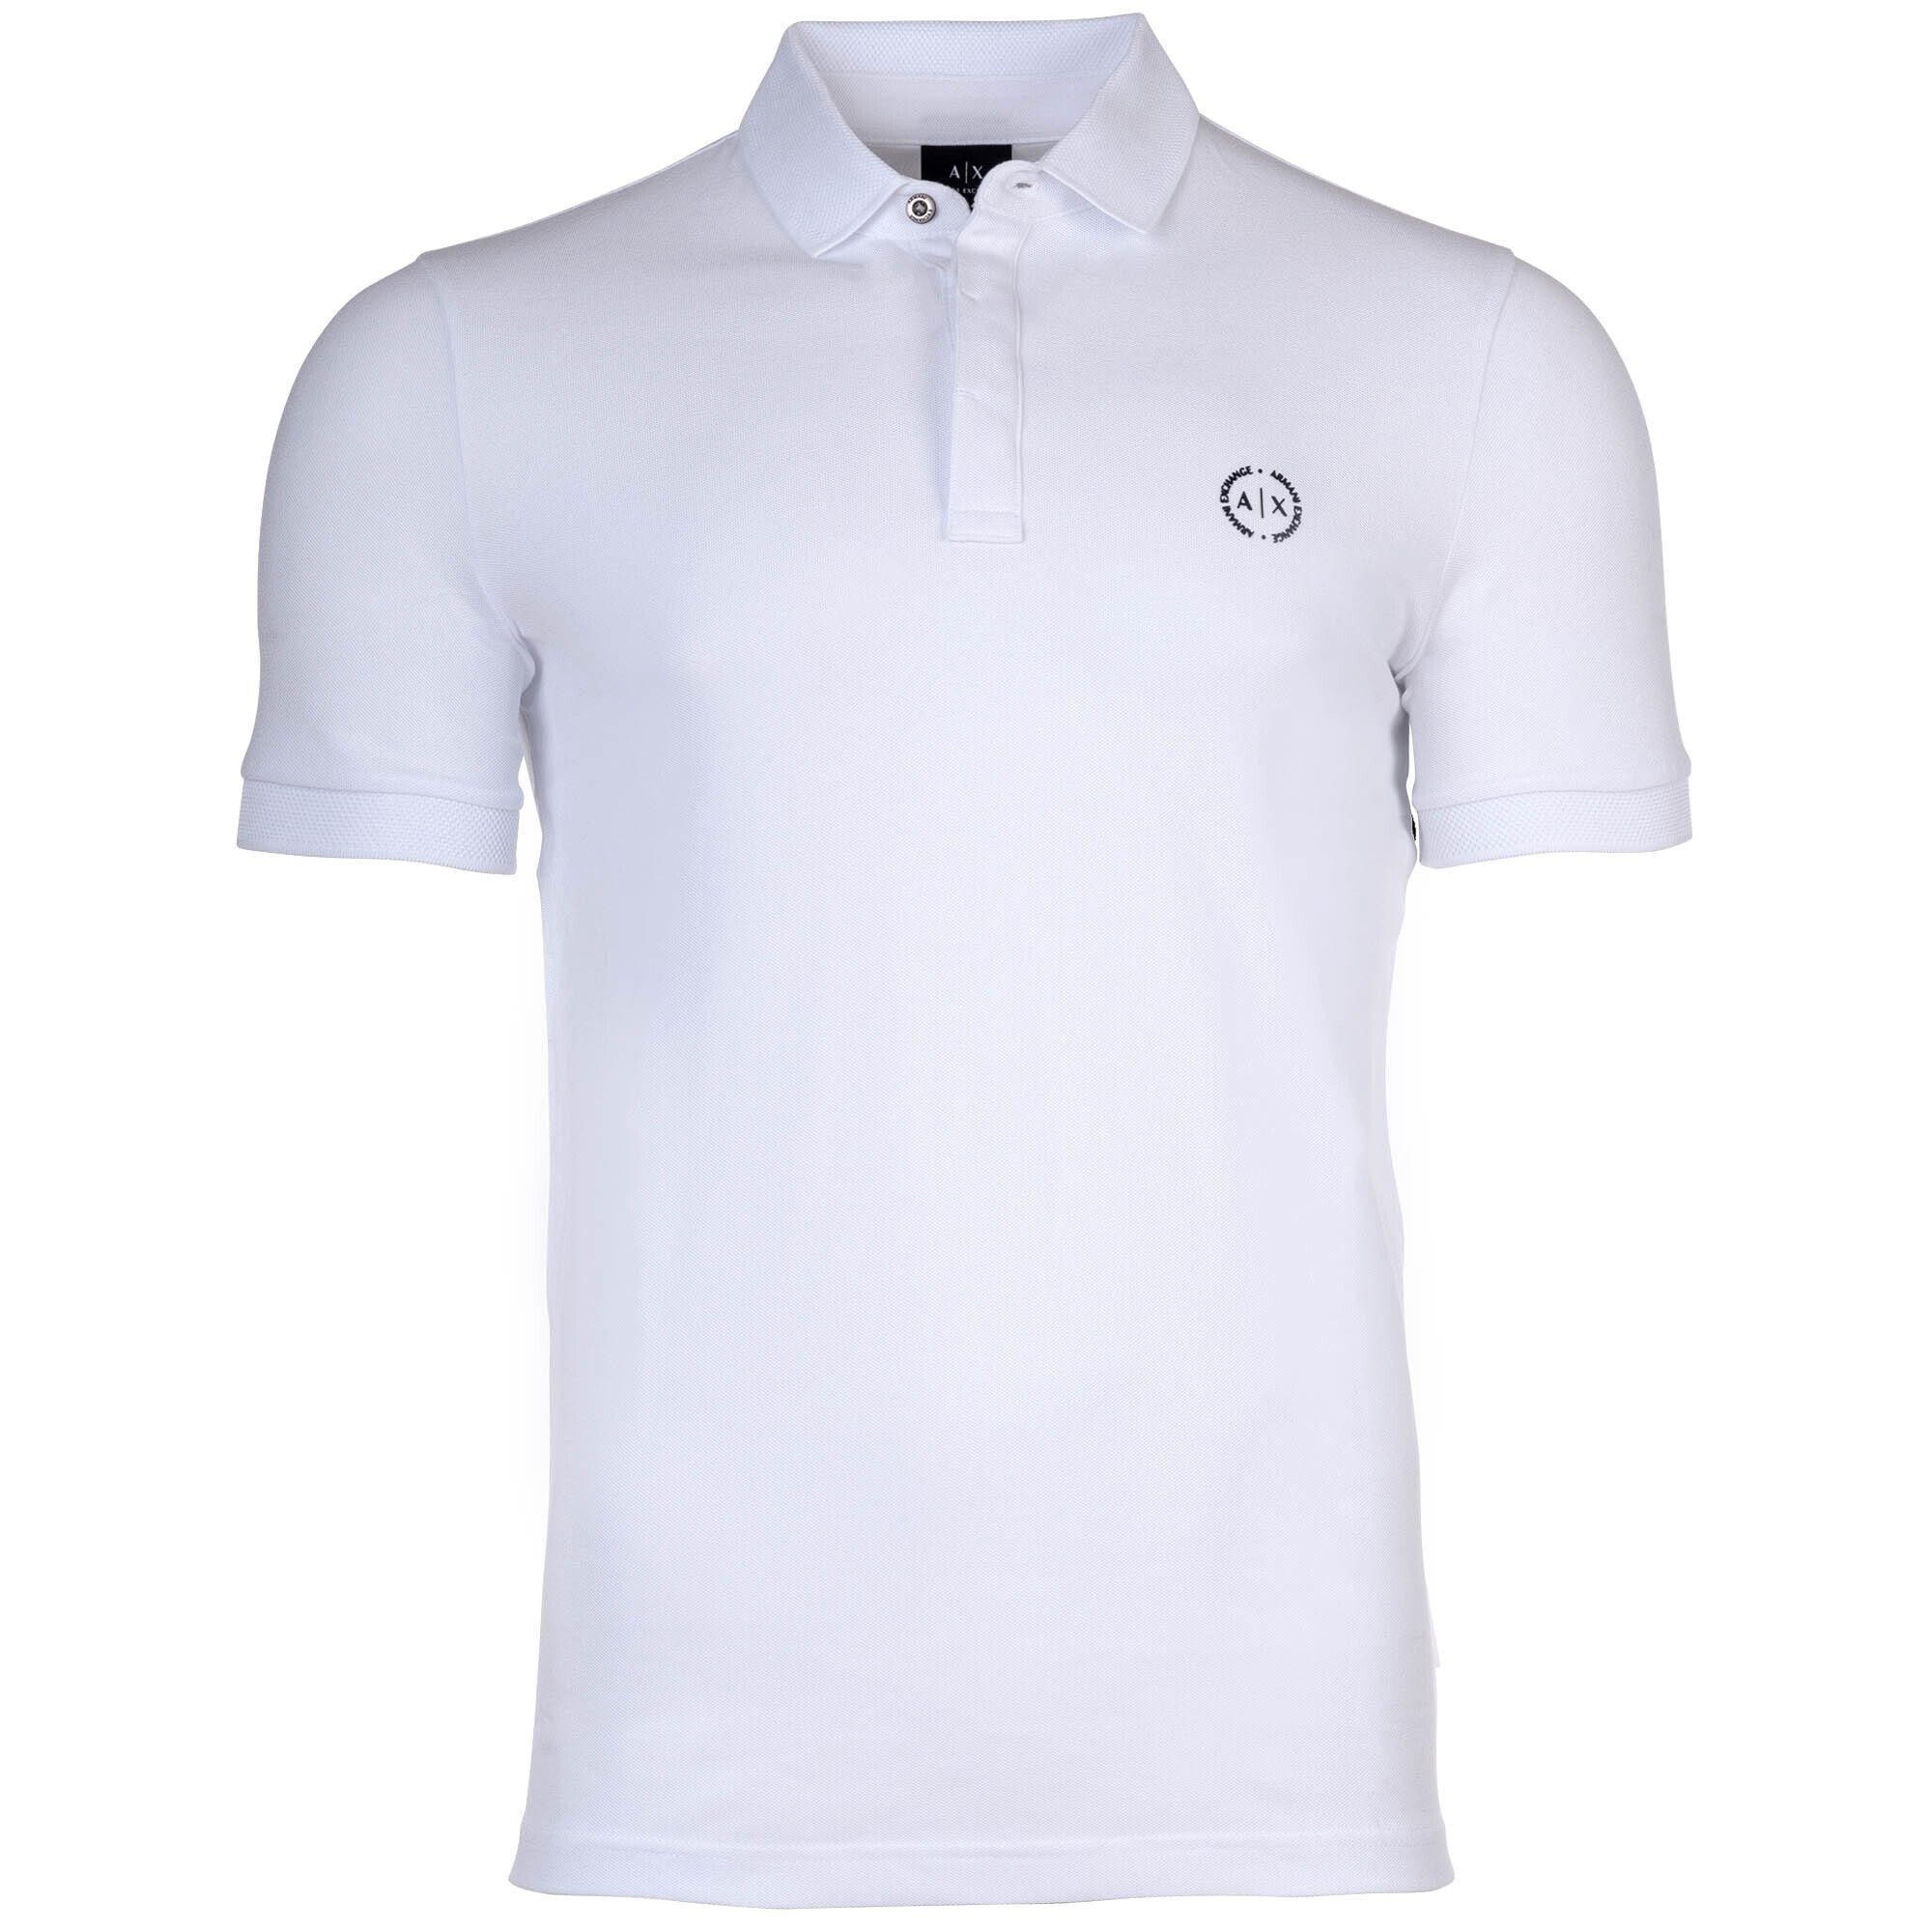 Poloshirt Weiß ARMANI - Slim Poloshirt Herren einfarbig, Cotton fit, EXCHANGE